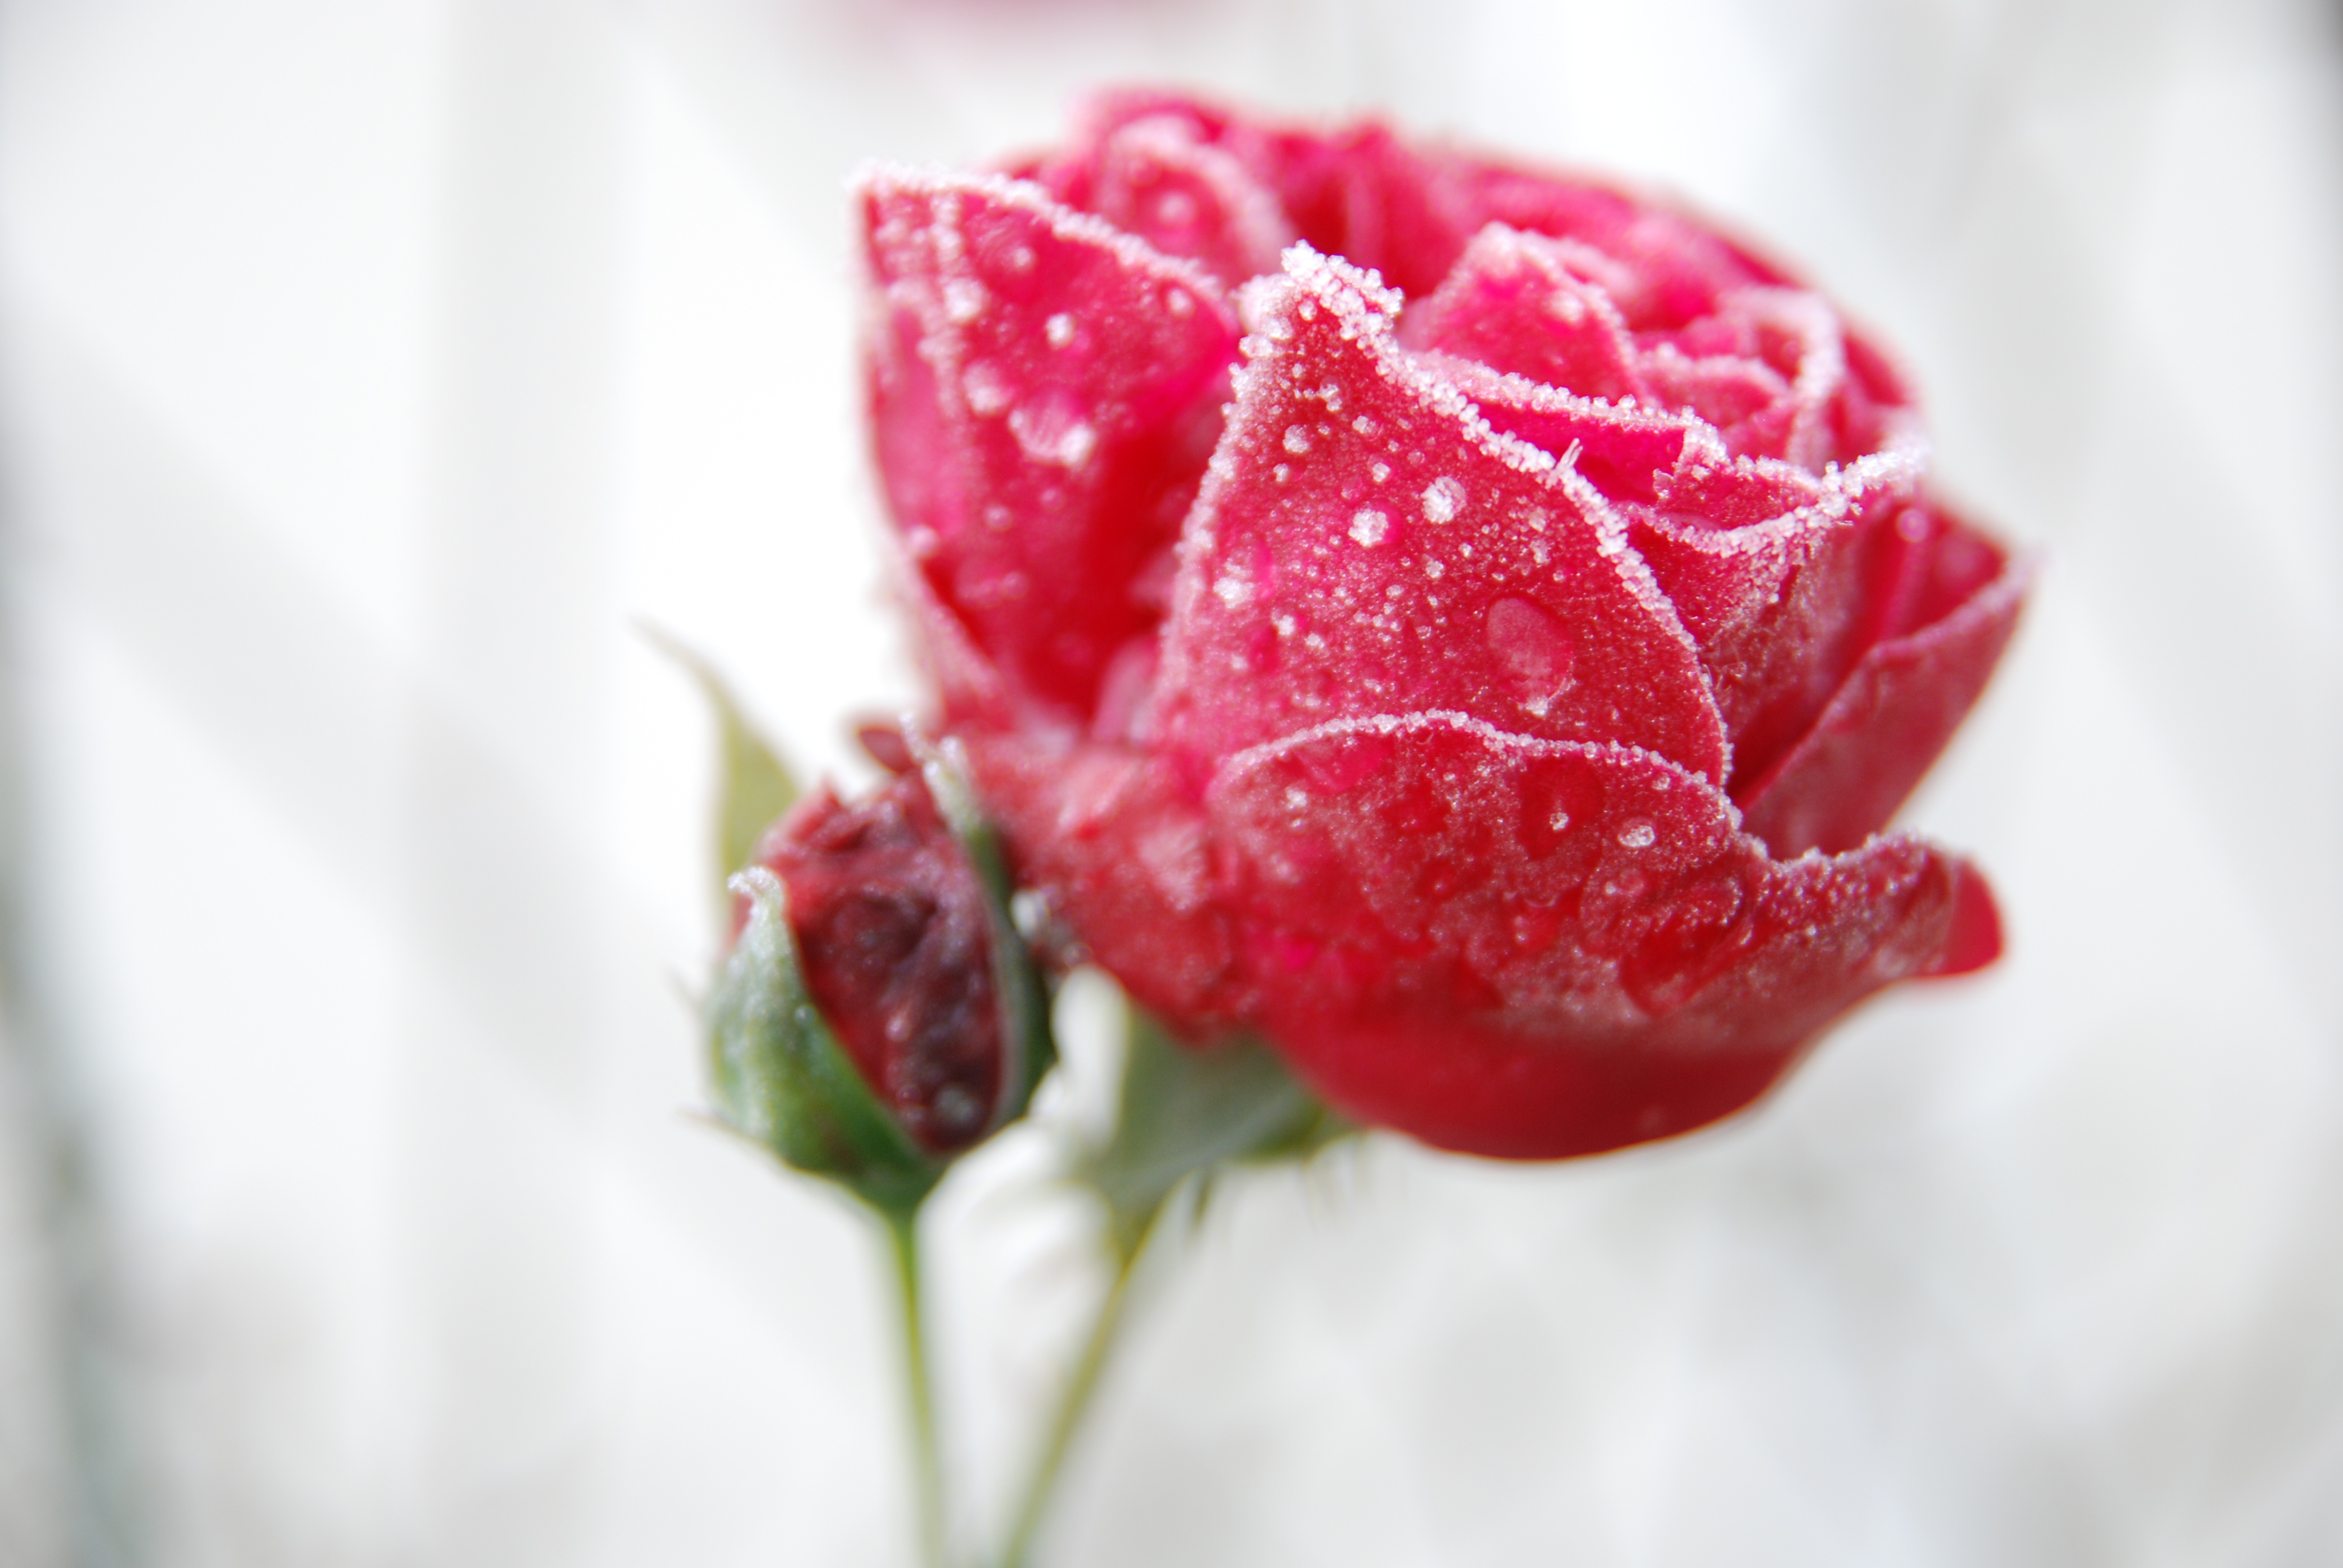 File:Frozen rose.JPG - Wikimedia Commons